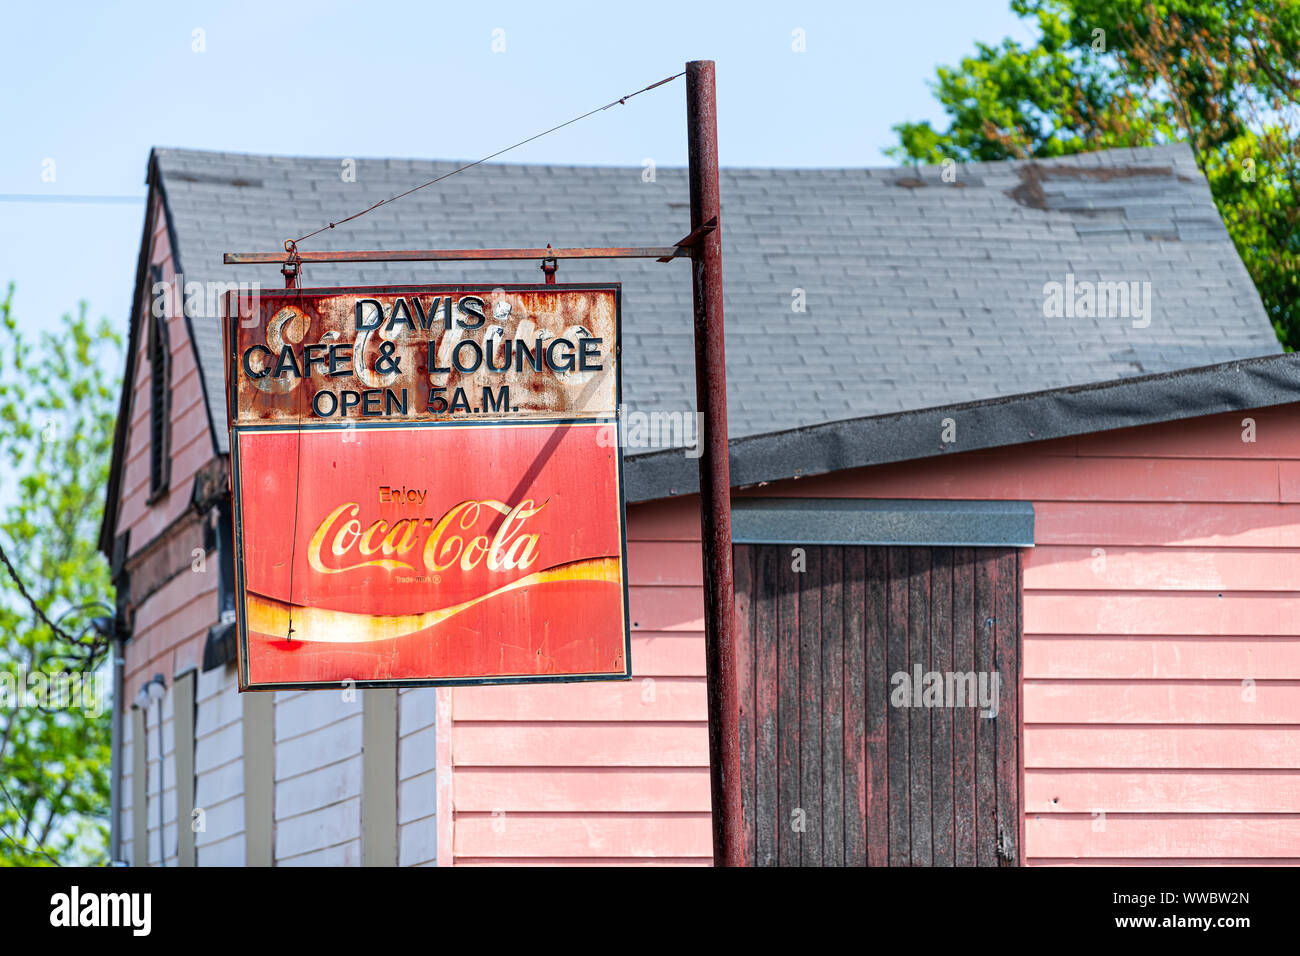 Montgomery, USA - 21. April 2018: Davis Cafe und Lounge mit offenen Stunden und Coca-Cola hängenden Retro genießen Alte vintage Zeichen in Alabama Hauptstadt Stockfoto